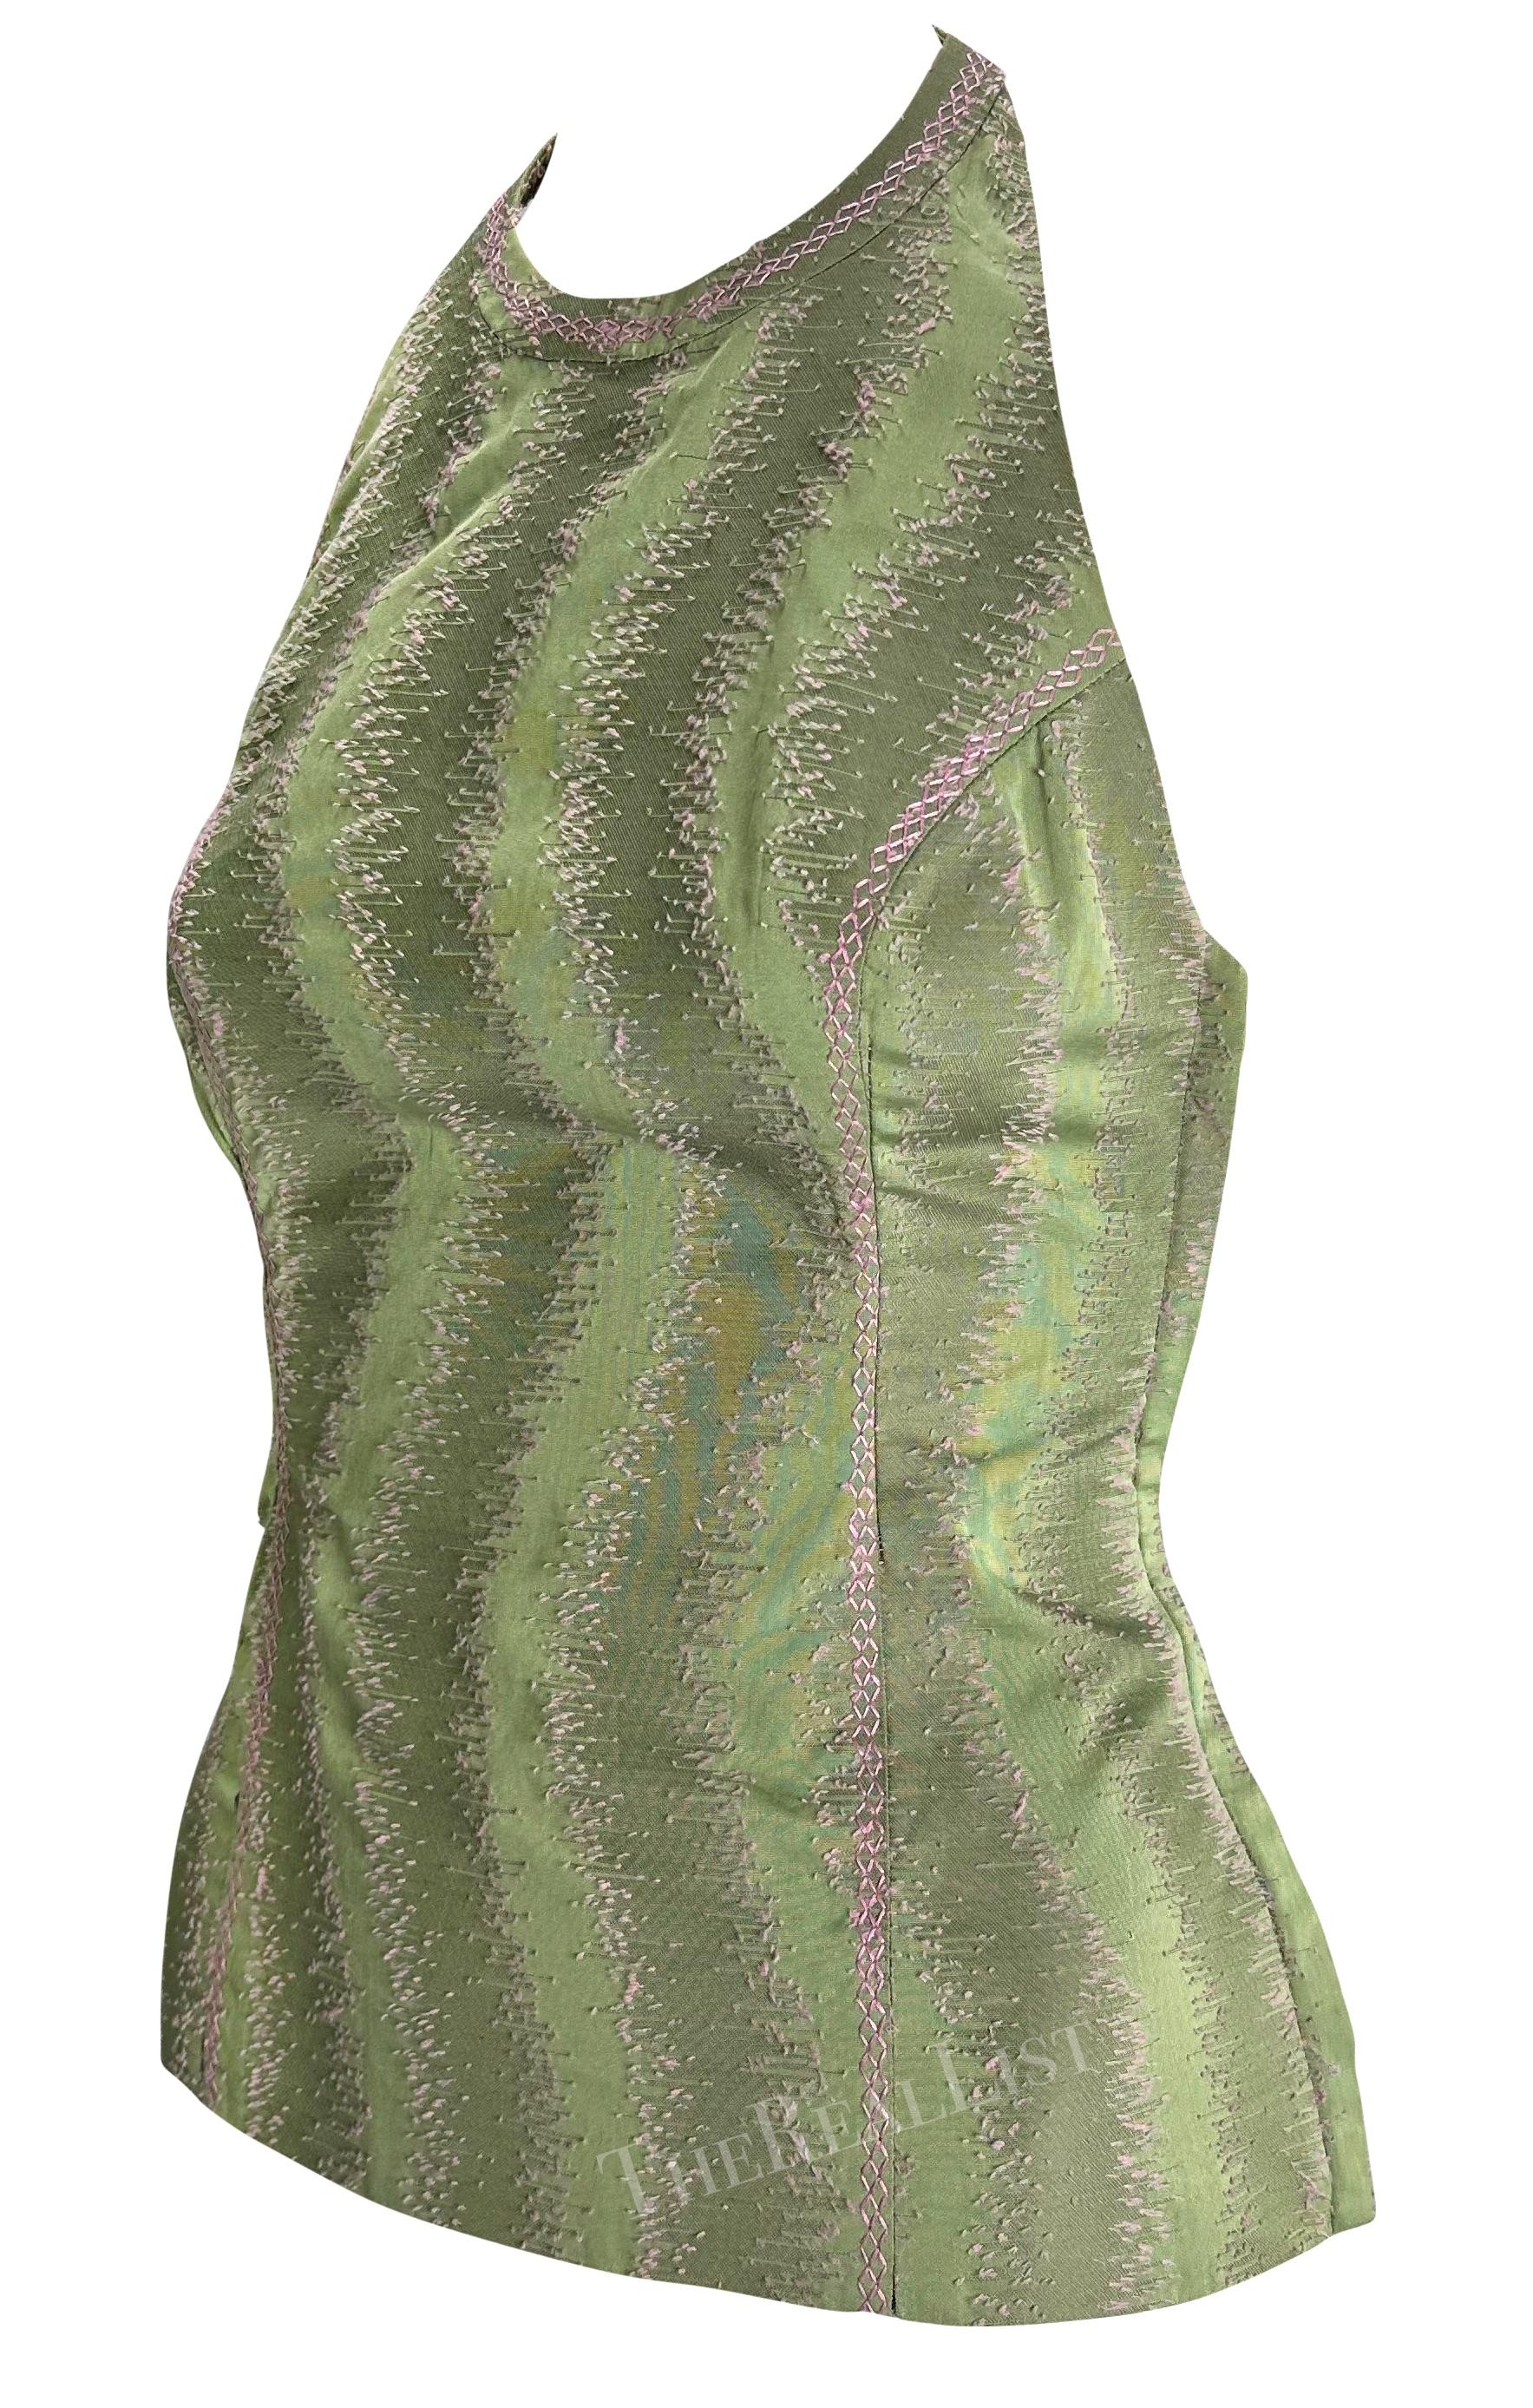 Voici un magnifique dos nu Gianni Versace de couleur pistache, conçu par Donatella Versace. Datant de 1999, ce top présente un motif abstrait rose pâle, créé à l'aide d'une broderie complexe. Cela donne à la pièce une profondeur de texture tout en